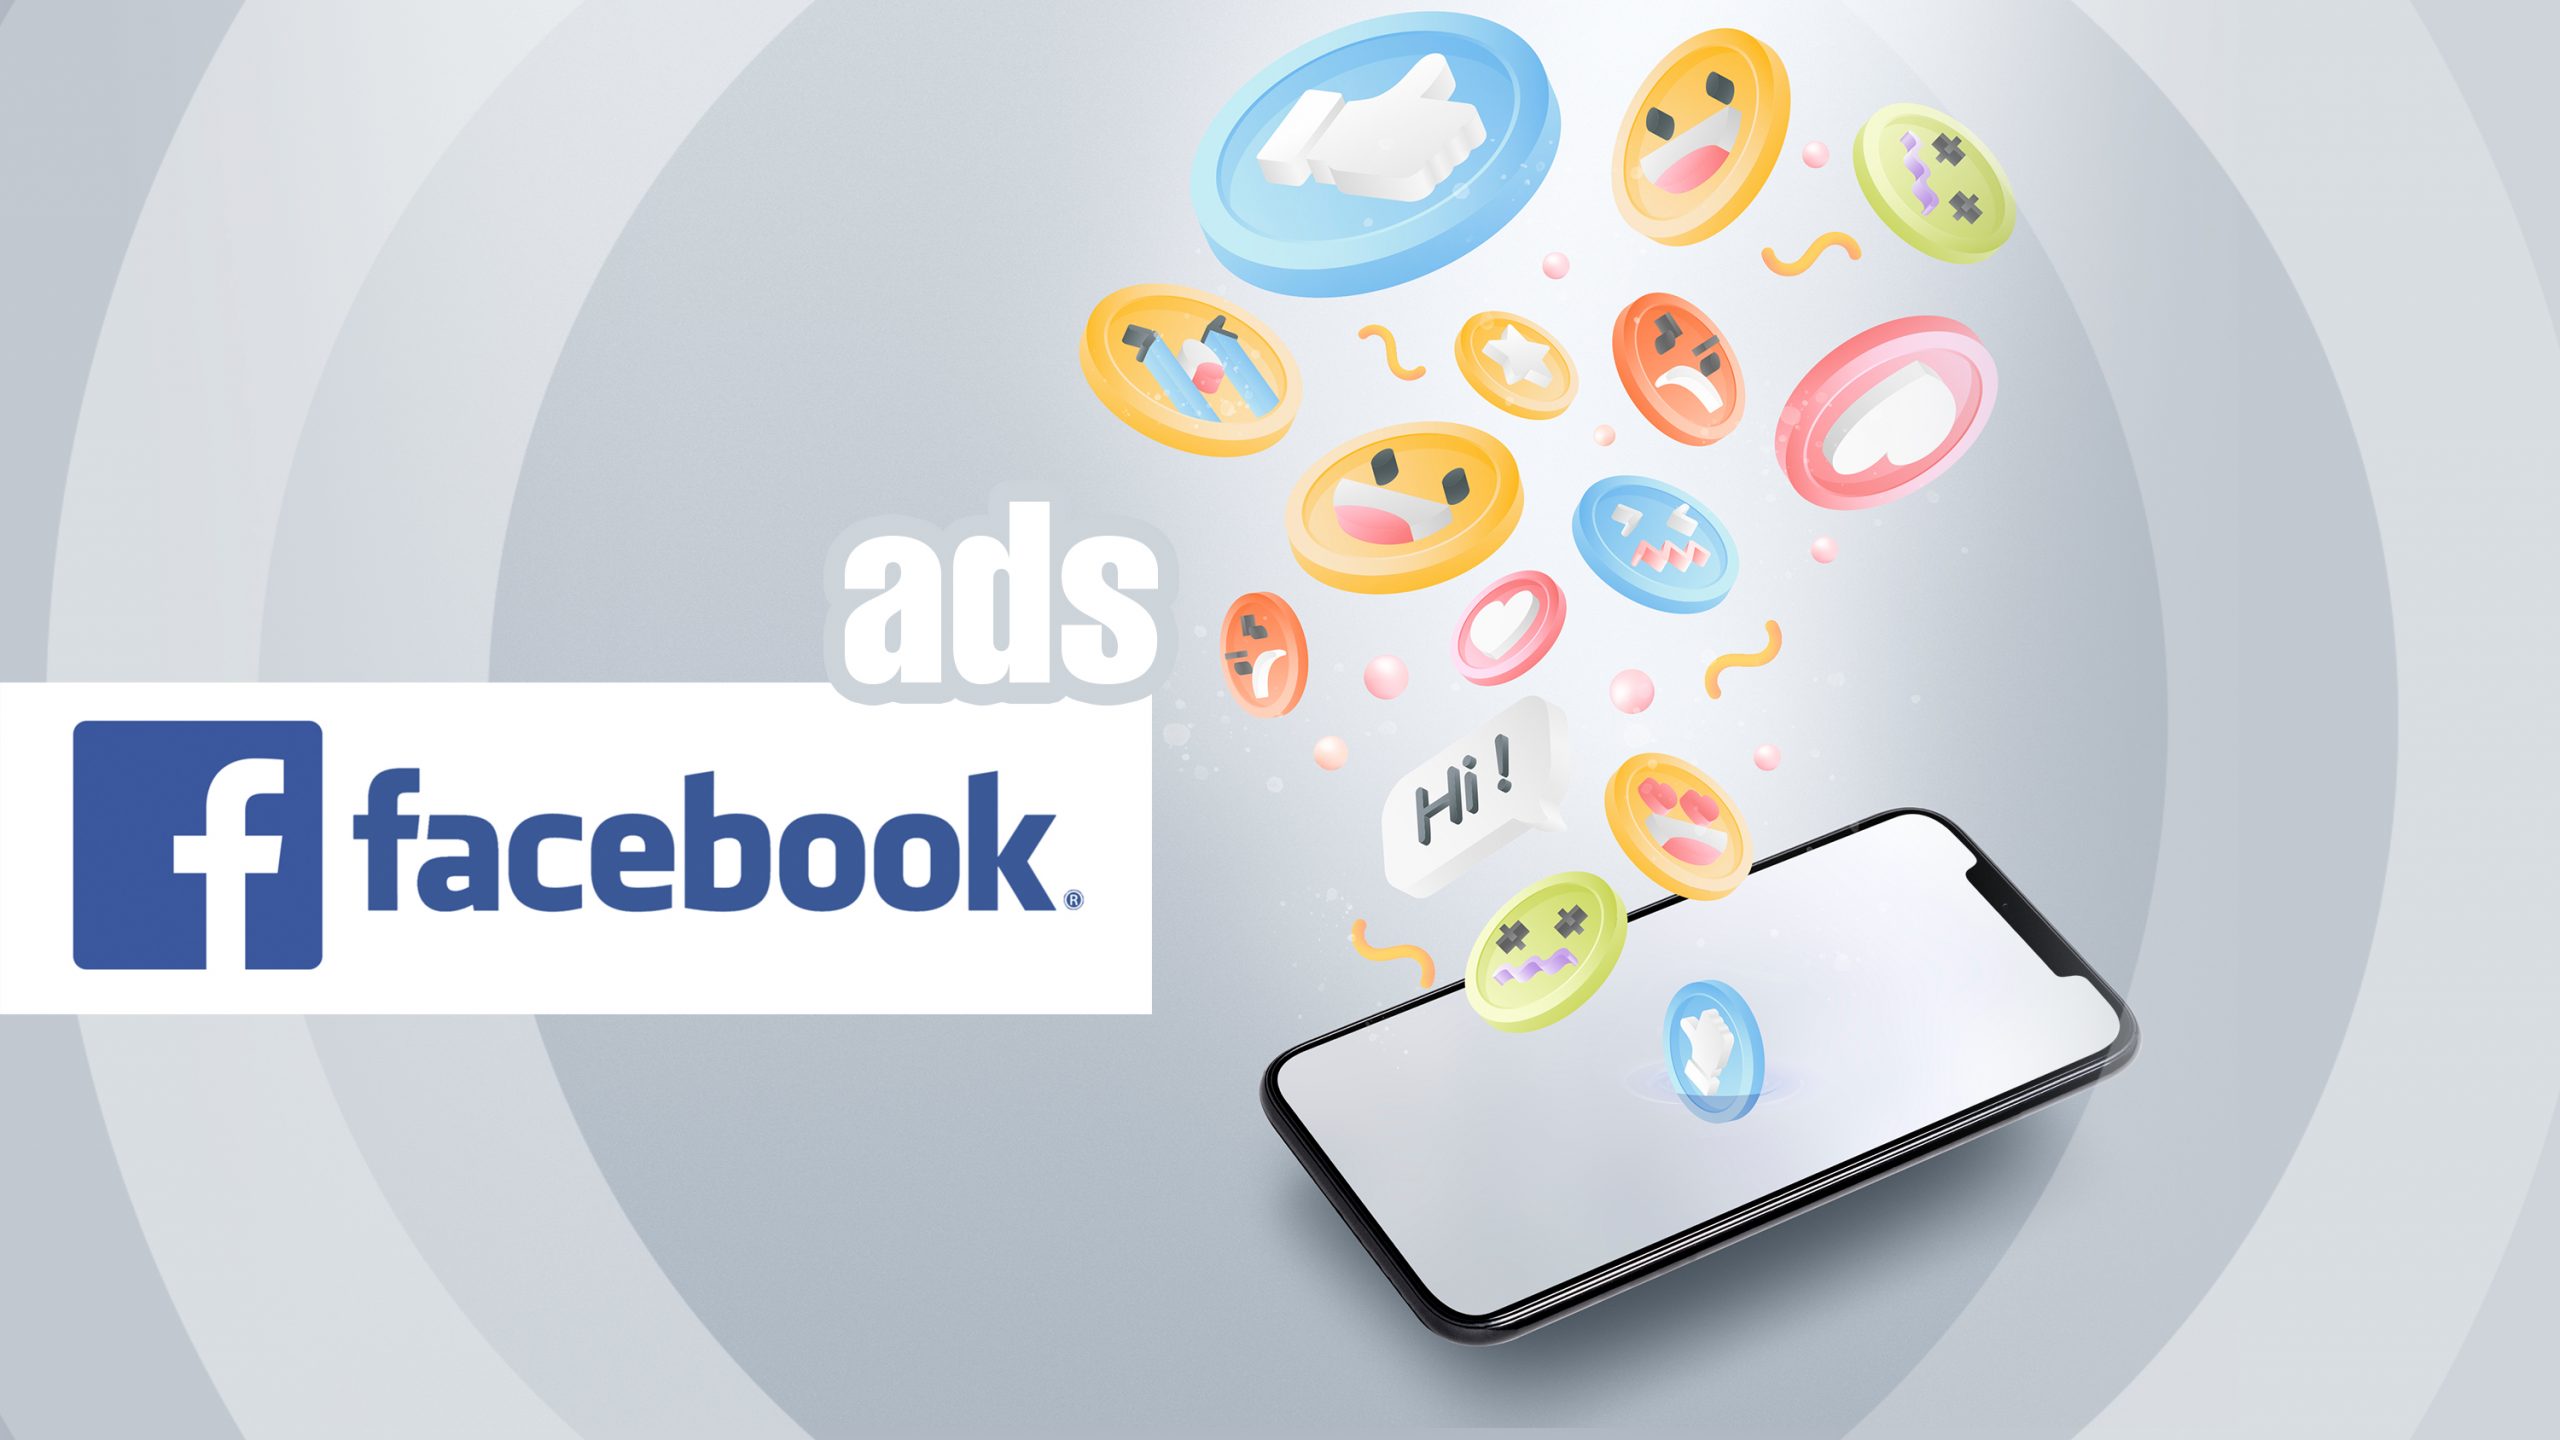 18150عمل حملات إعلانية لصفحتك على الفيس بوك وإنسقرام